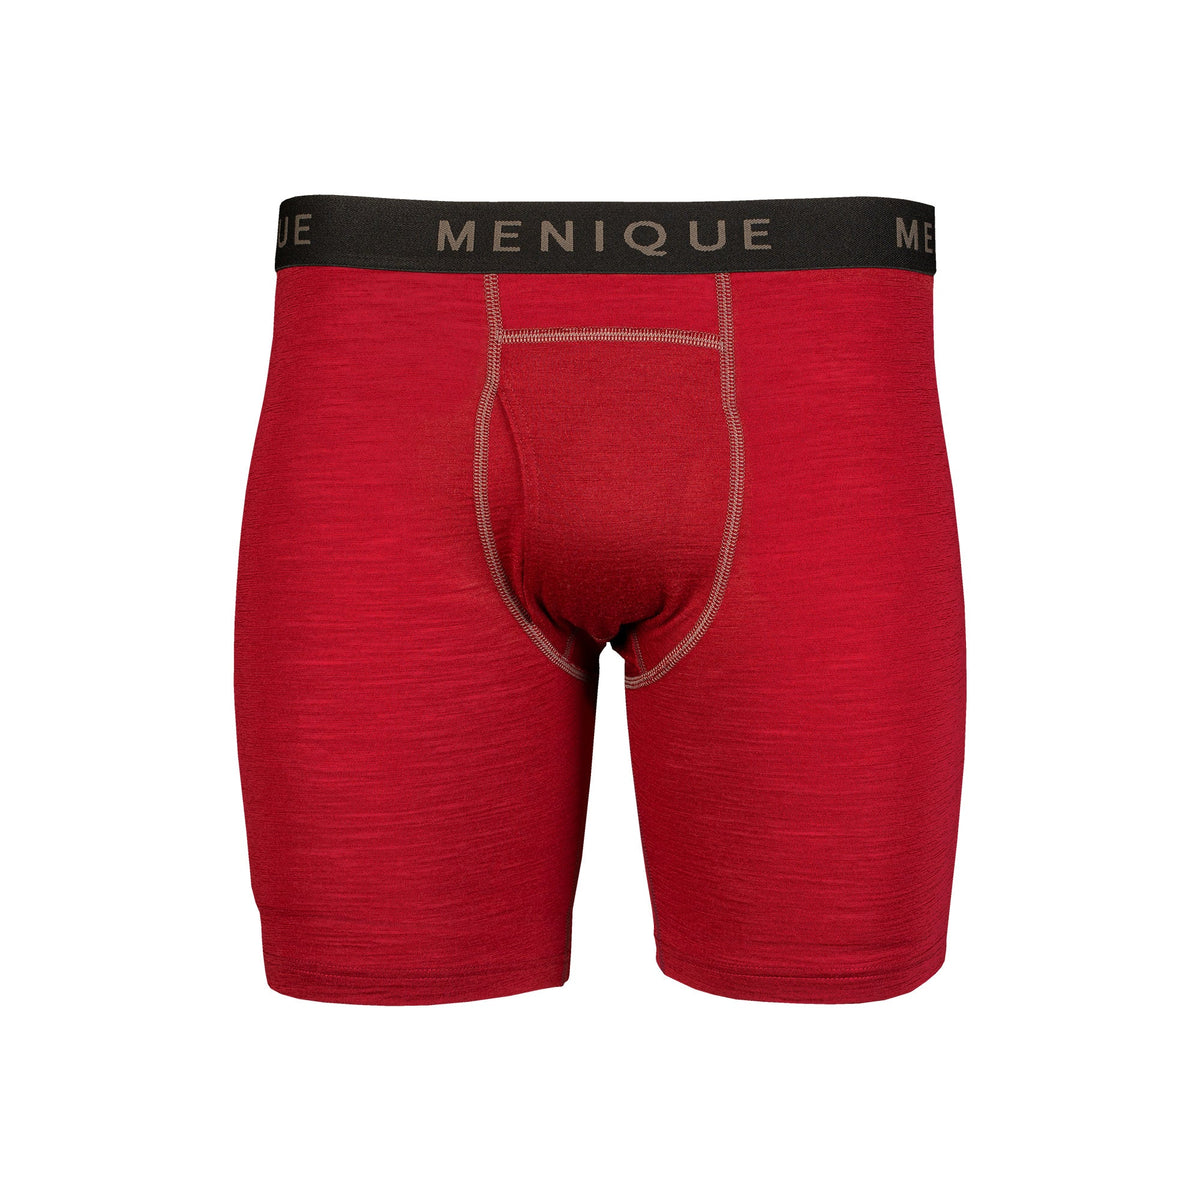 MENIQUE 100% Merino Wool Mens Boxer Briefs